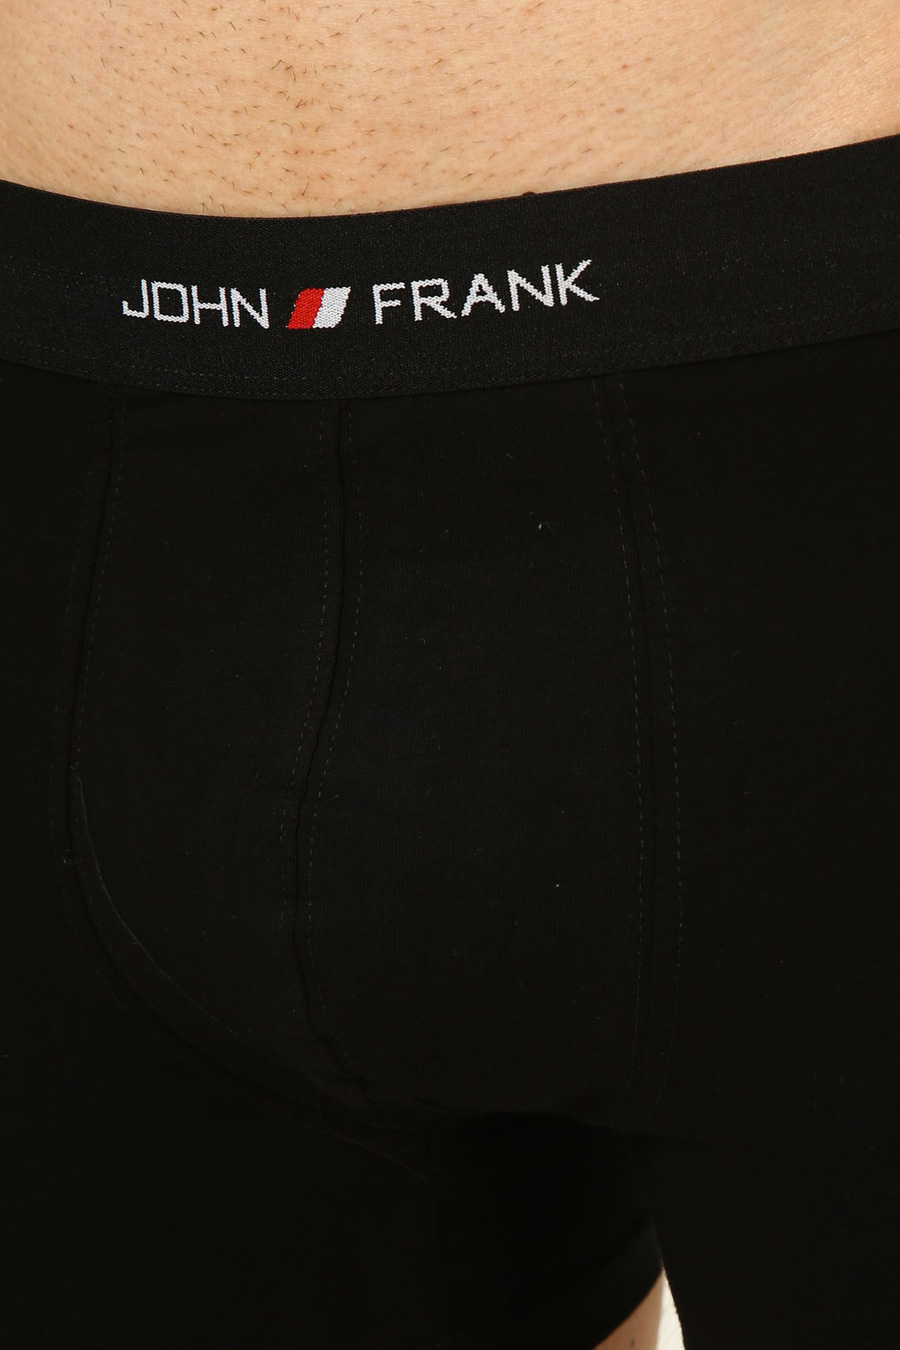 Bokserio šortai JOHN FRANK JFB111-BLACK